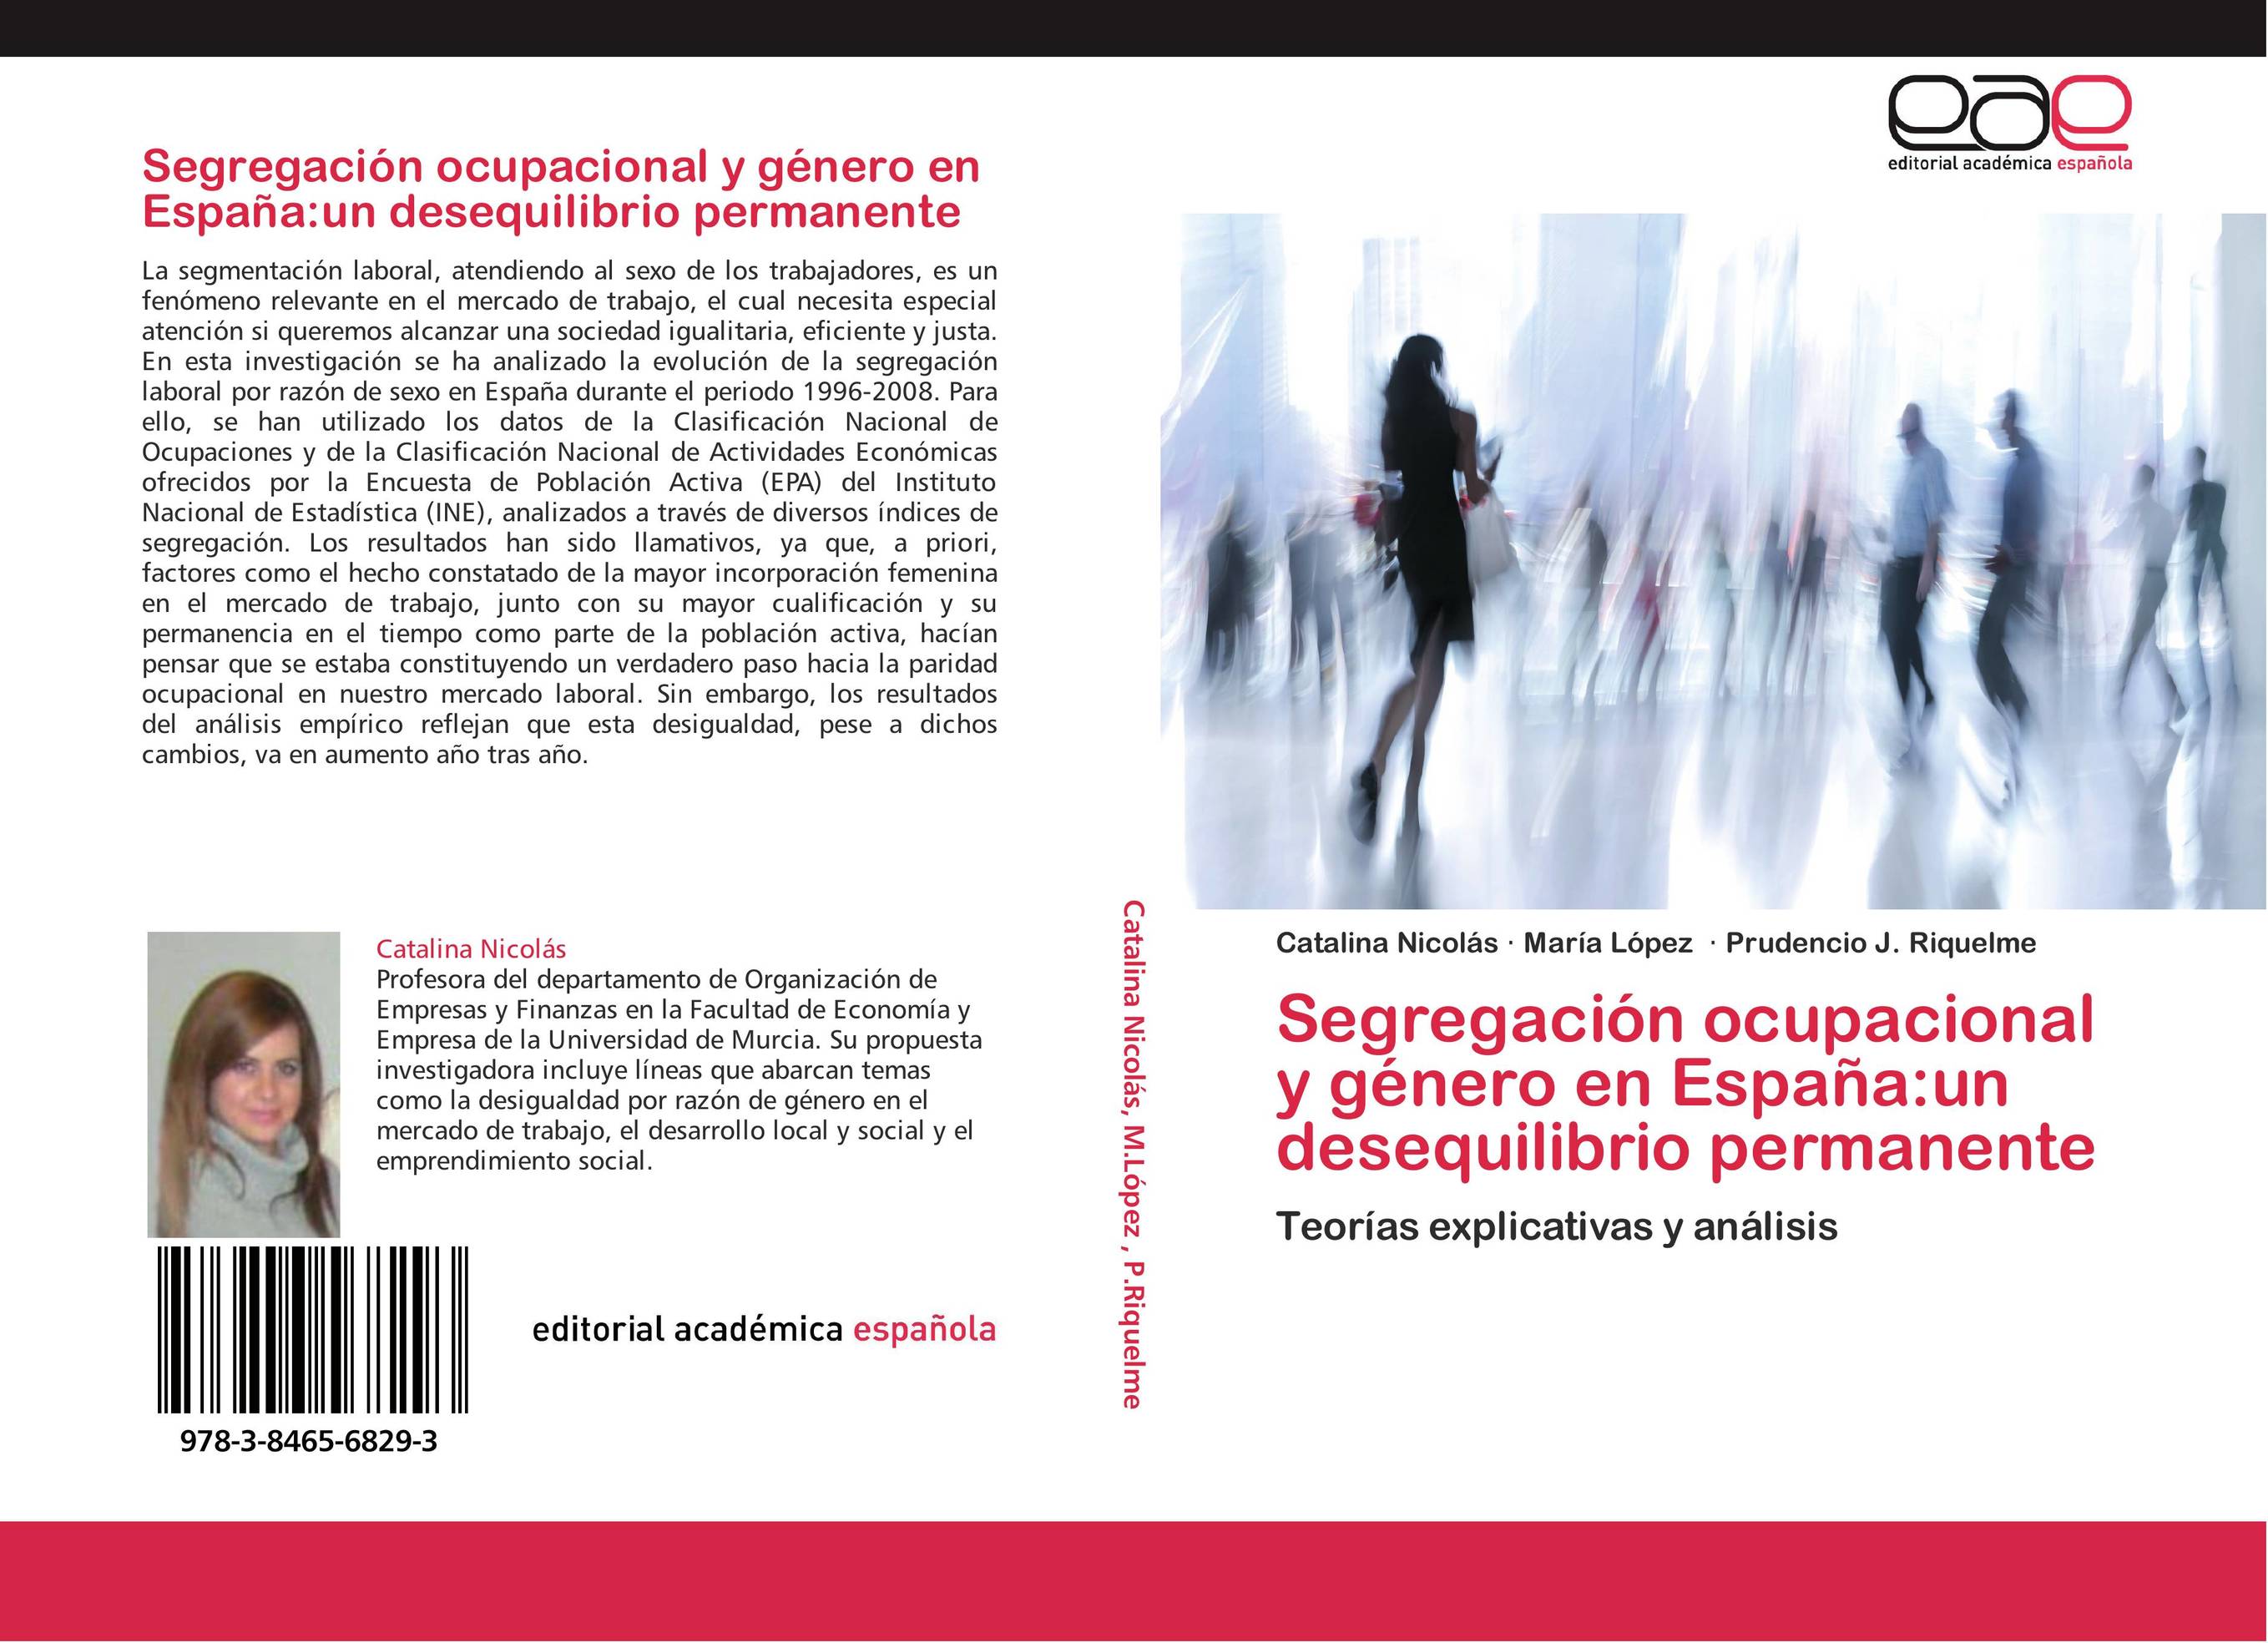 Segregación ocupacional y género en España:un desequilibrio permanente